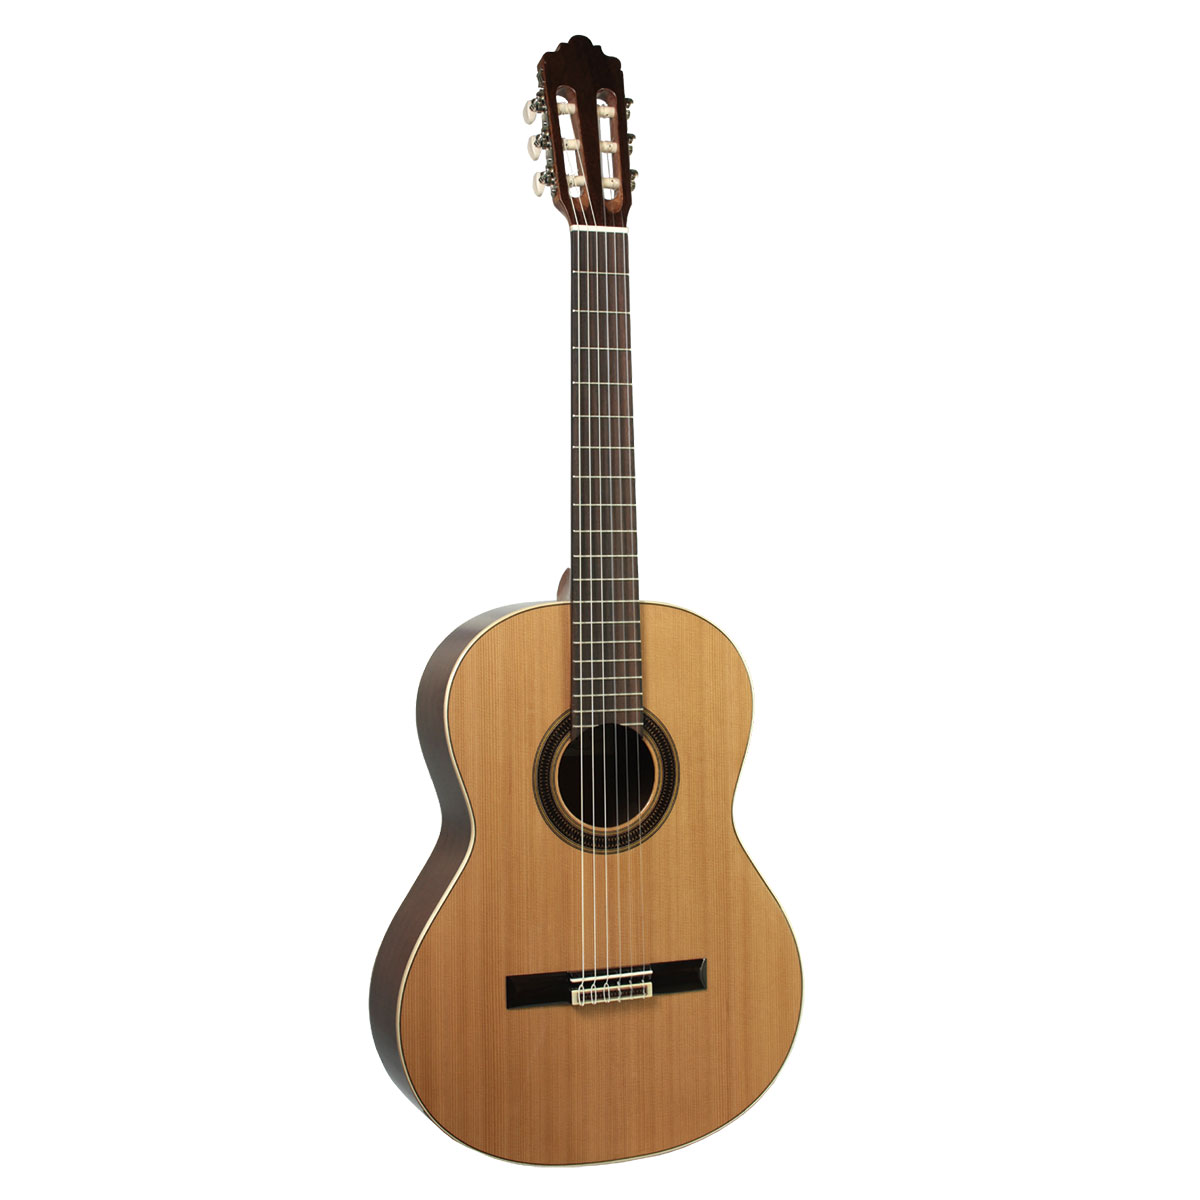 ARANJUEZ 505SC 650mm クラシックギター 島村楽器オリジナルモデル